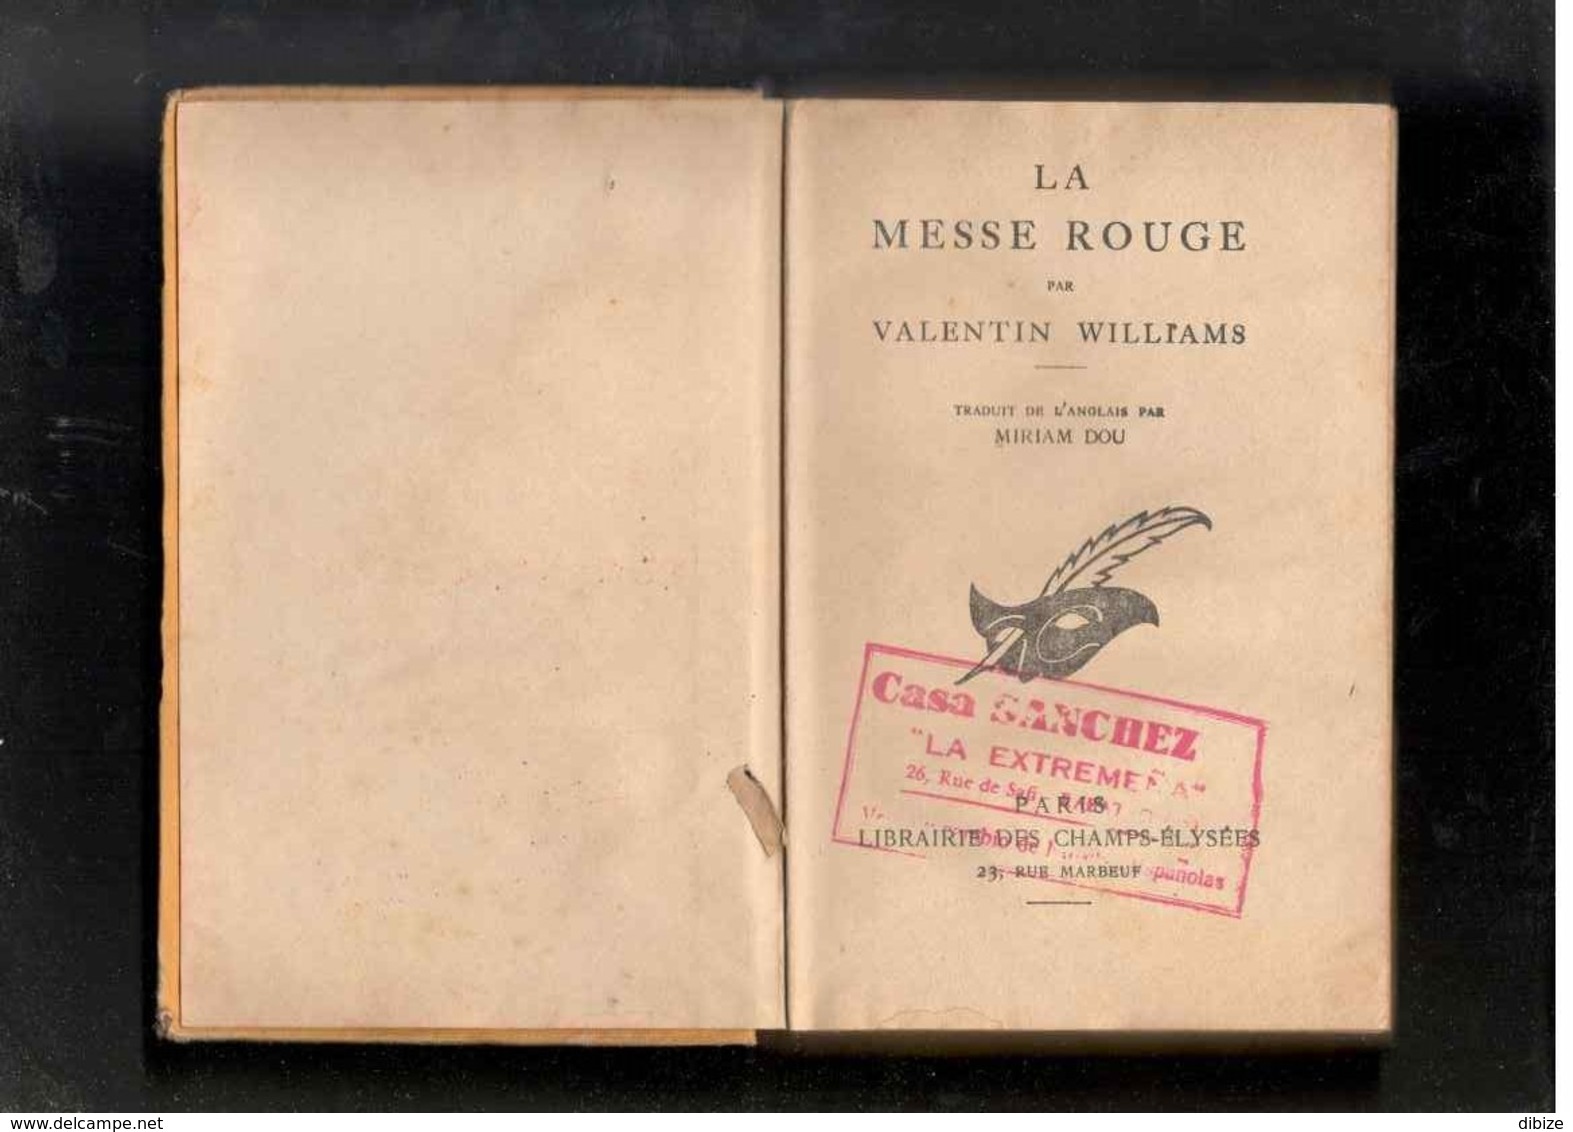 Roman. Valentin Williams. La Messe Rouge. Le Masque N° 115. 1932. Edition Originale Cartonnée. - Le Masque